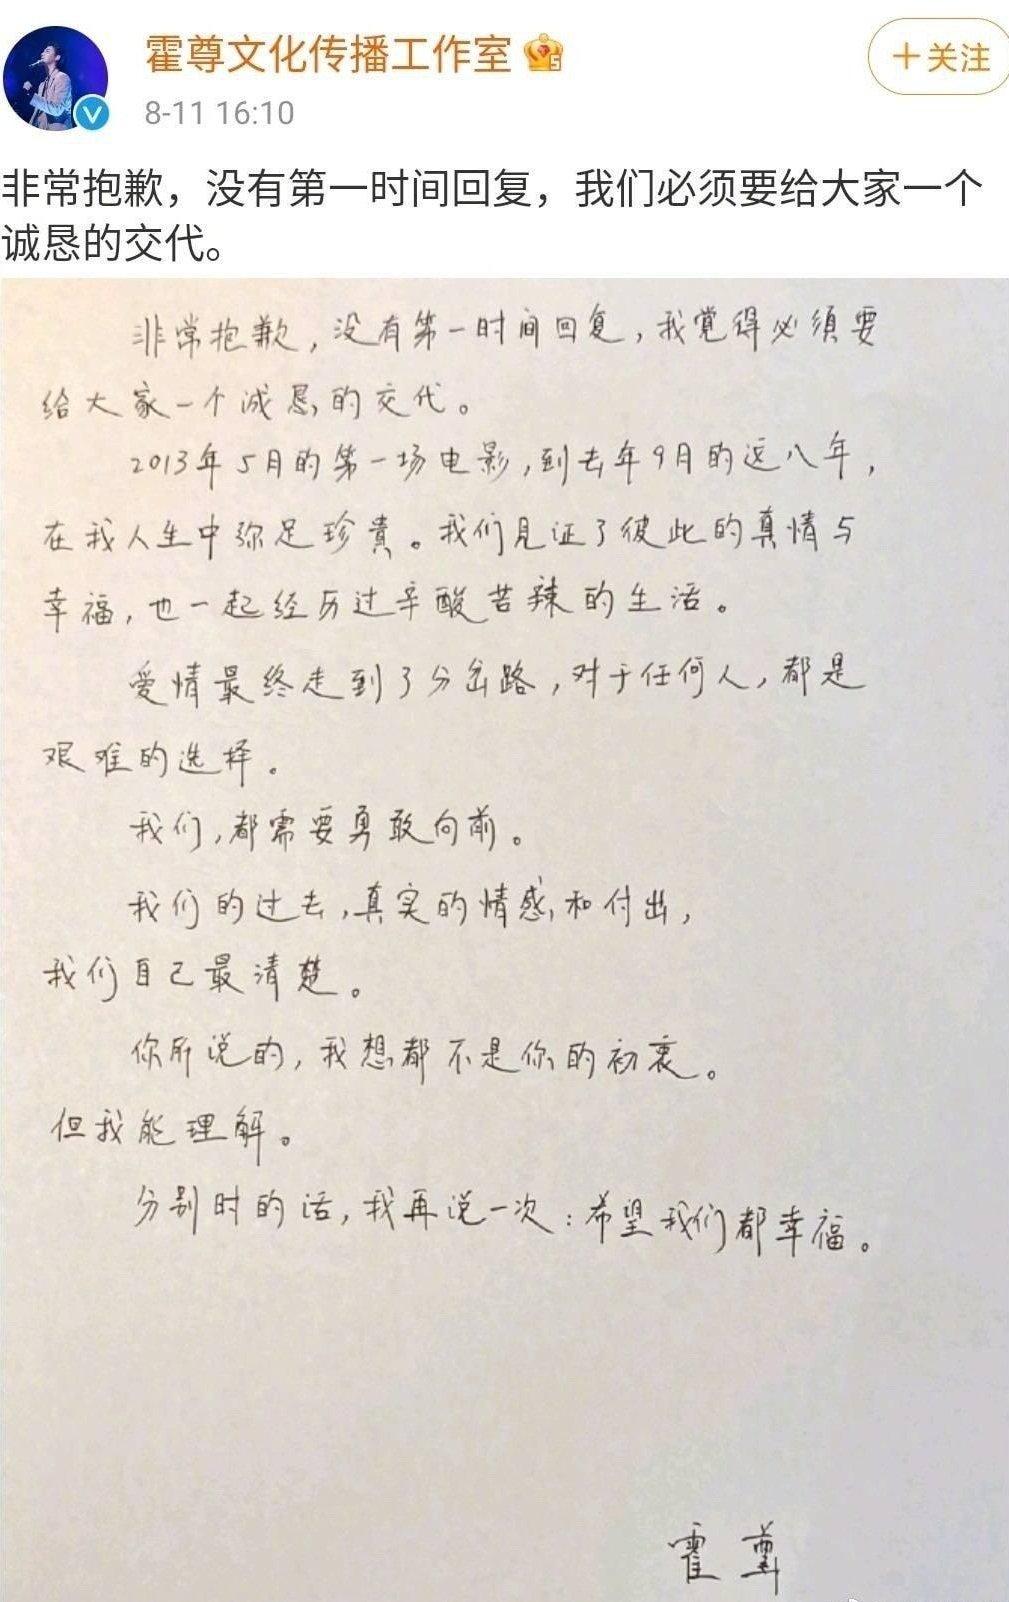 Bức tâm thư viết tay của Hoắc Tôn được phòng làm việc của nam ca sĩ đăng tải vào chiều ngày 11/8 (Ảnh: Internet).